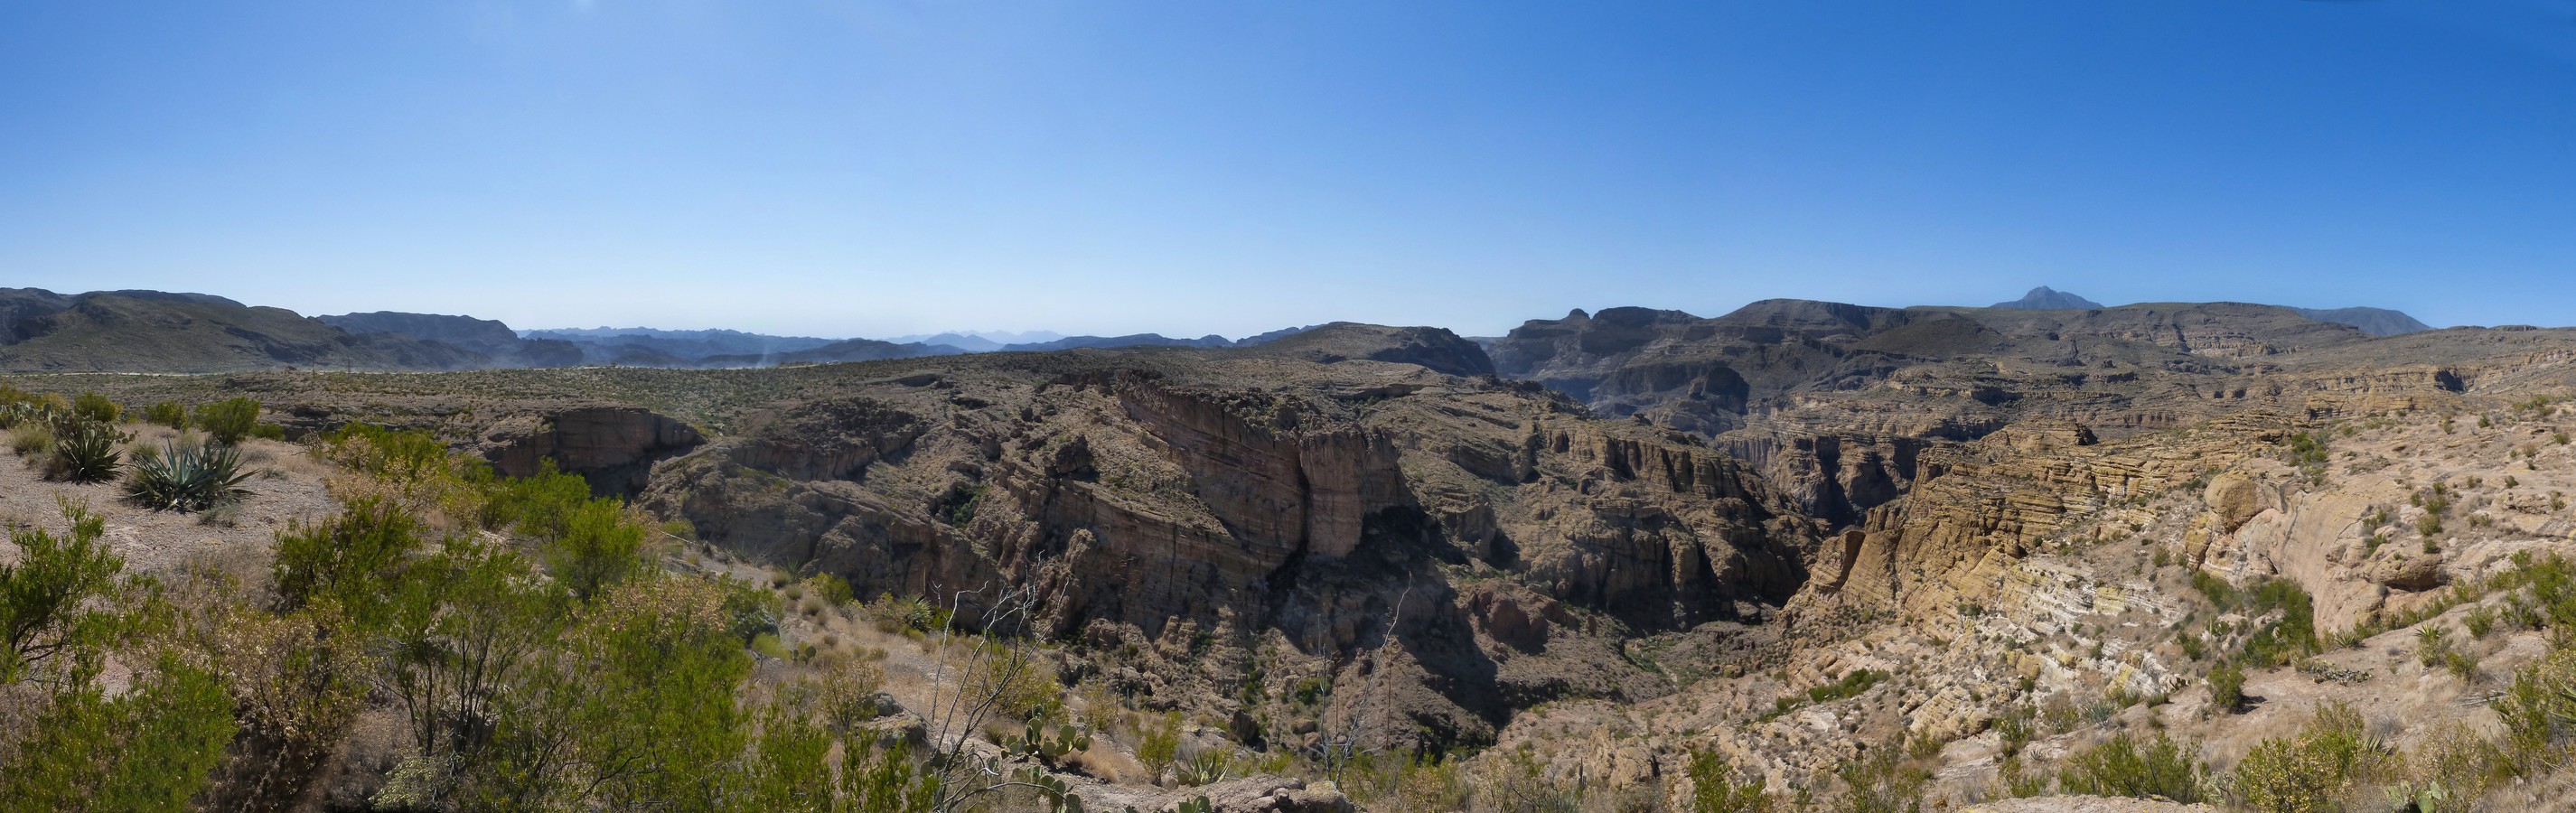 Apache Trail, Blick vom Overlook